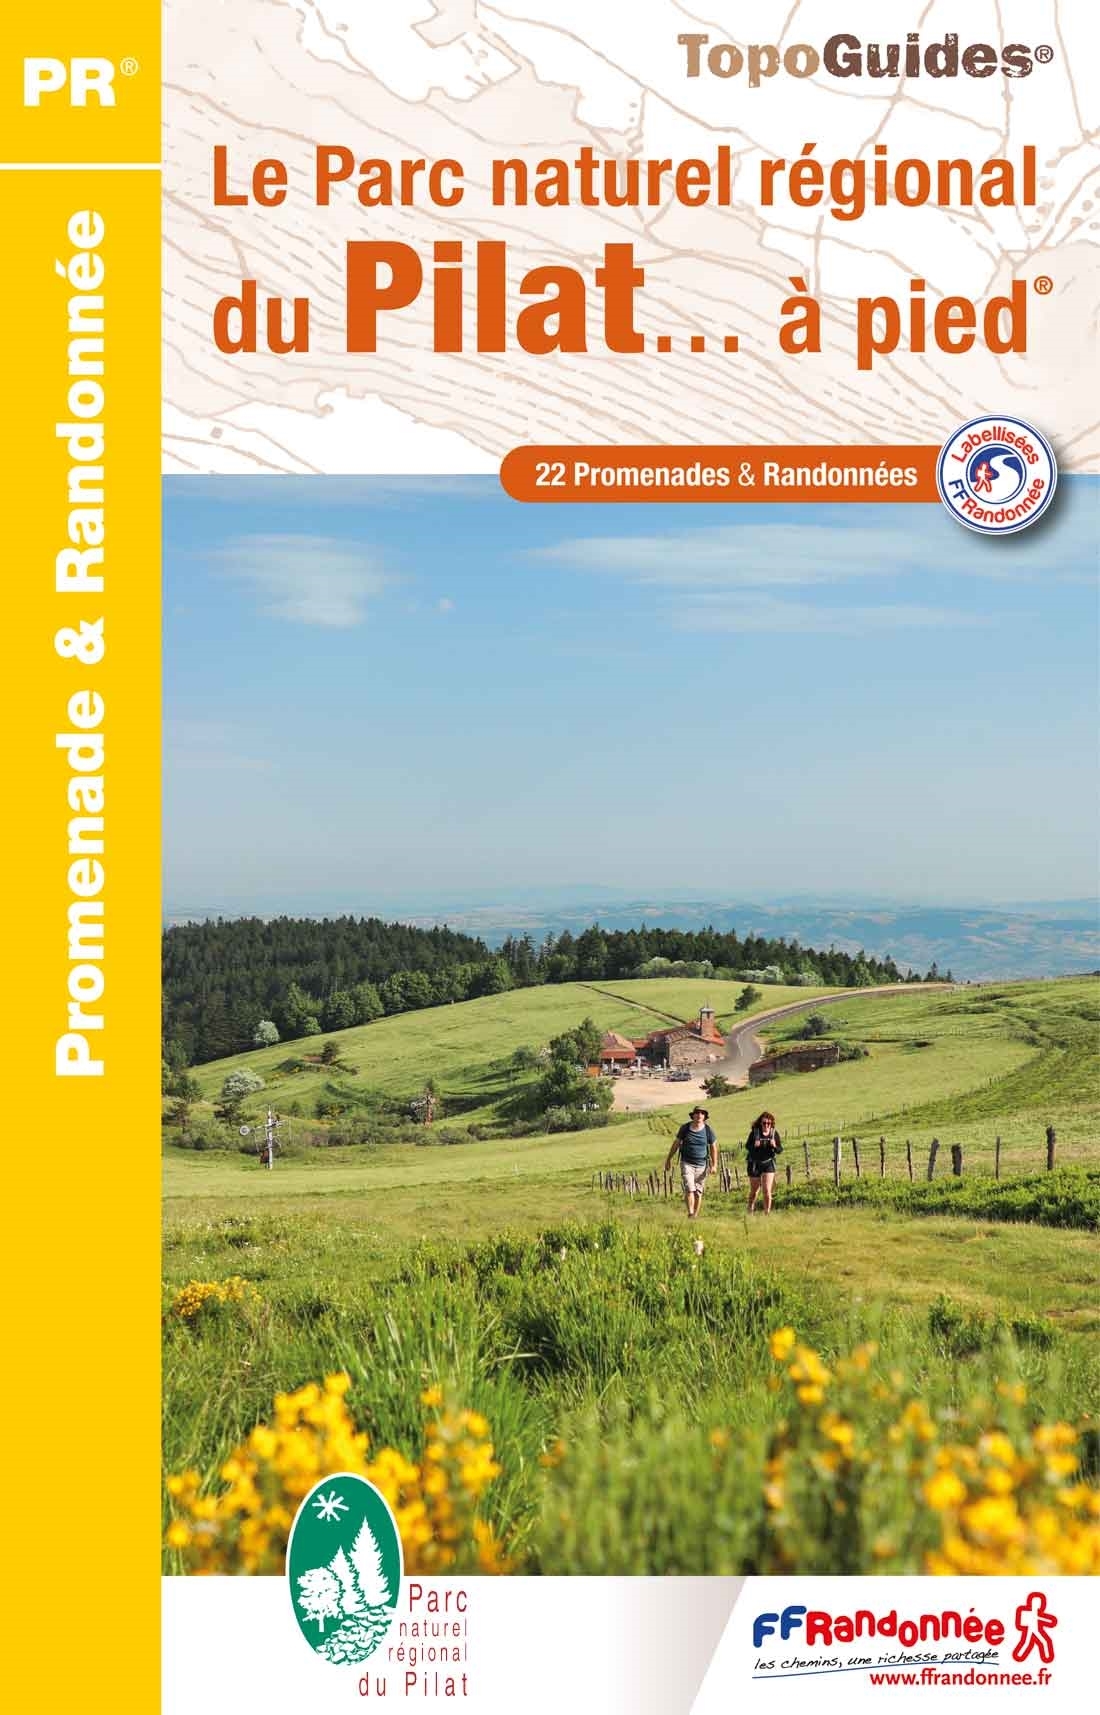 Online bestellen: Wandelgids PN05 Le Parc naturel régional du Pilat... à pied | FFRP